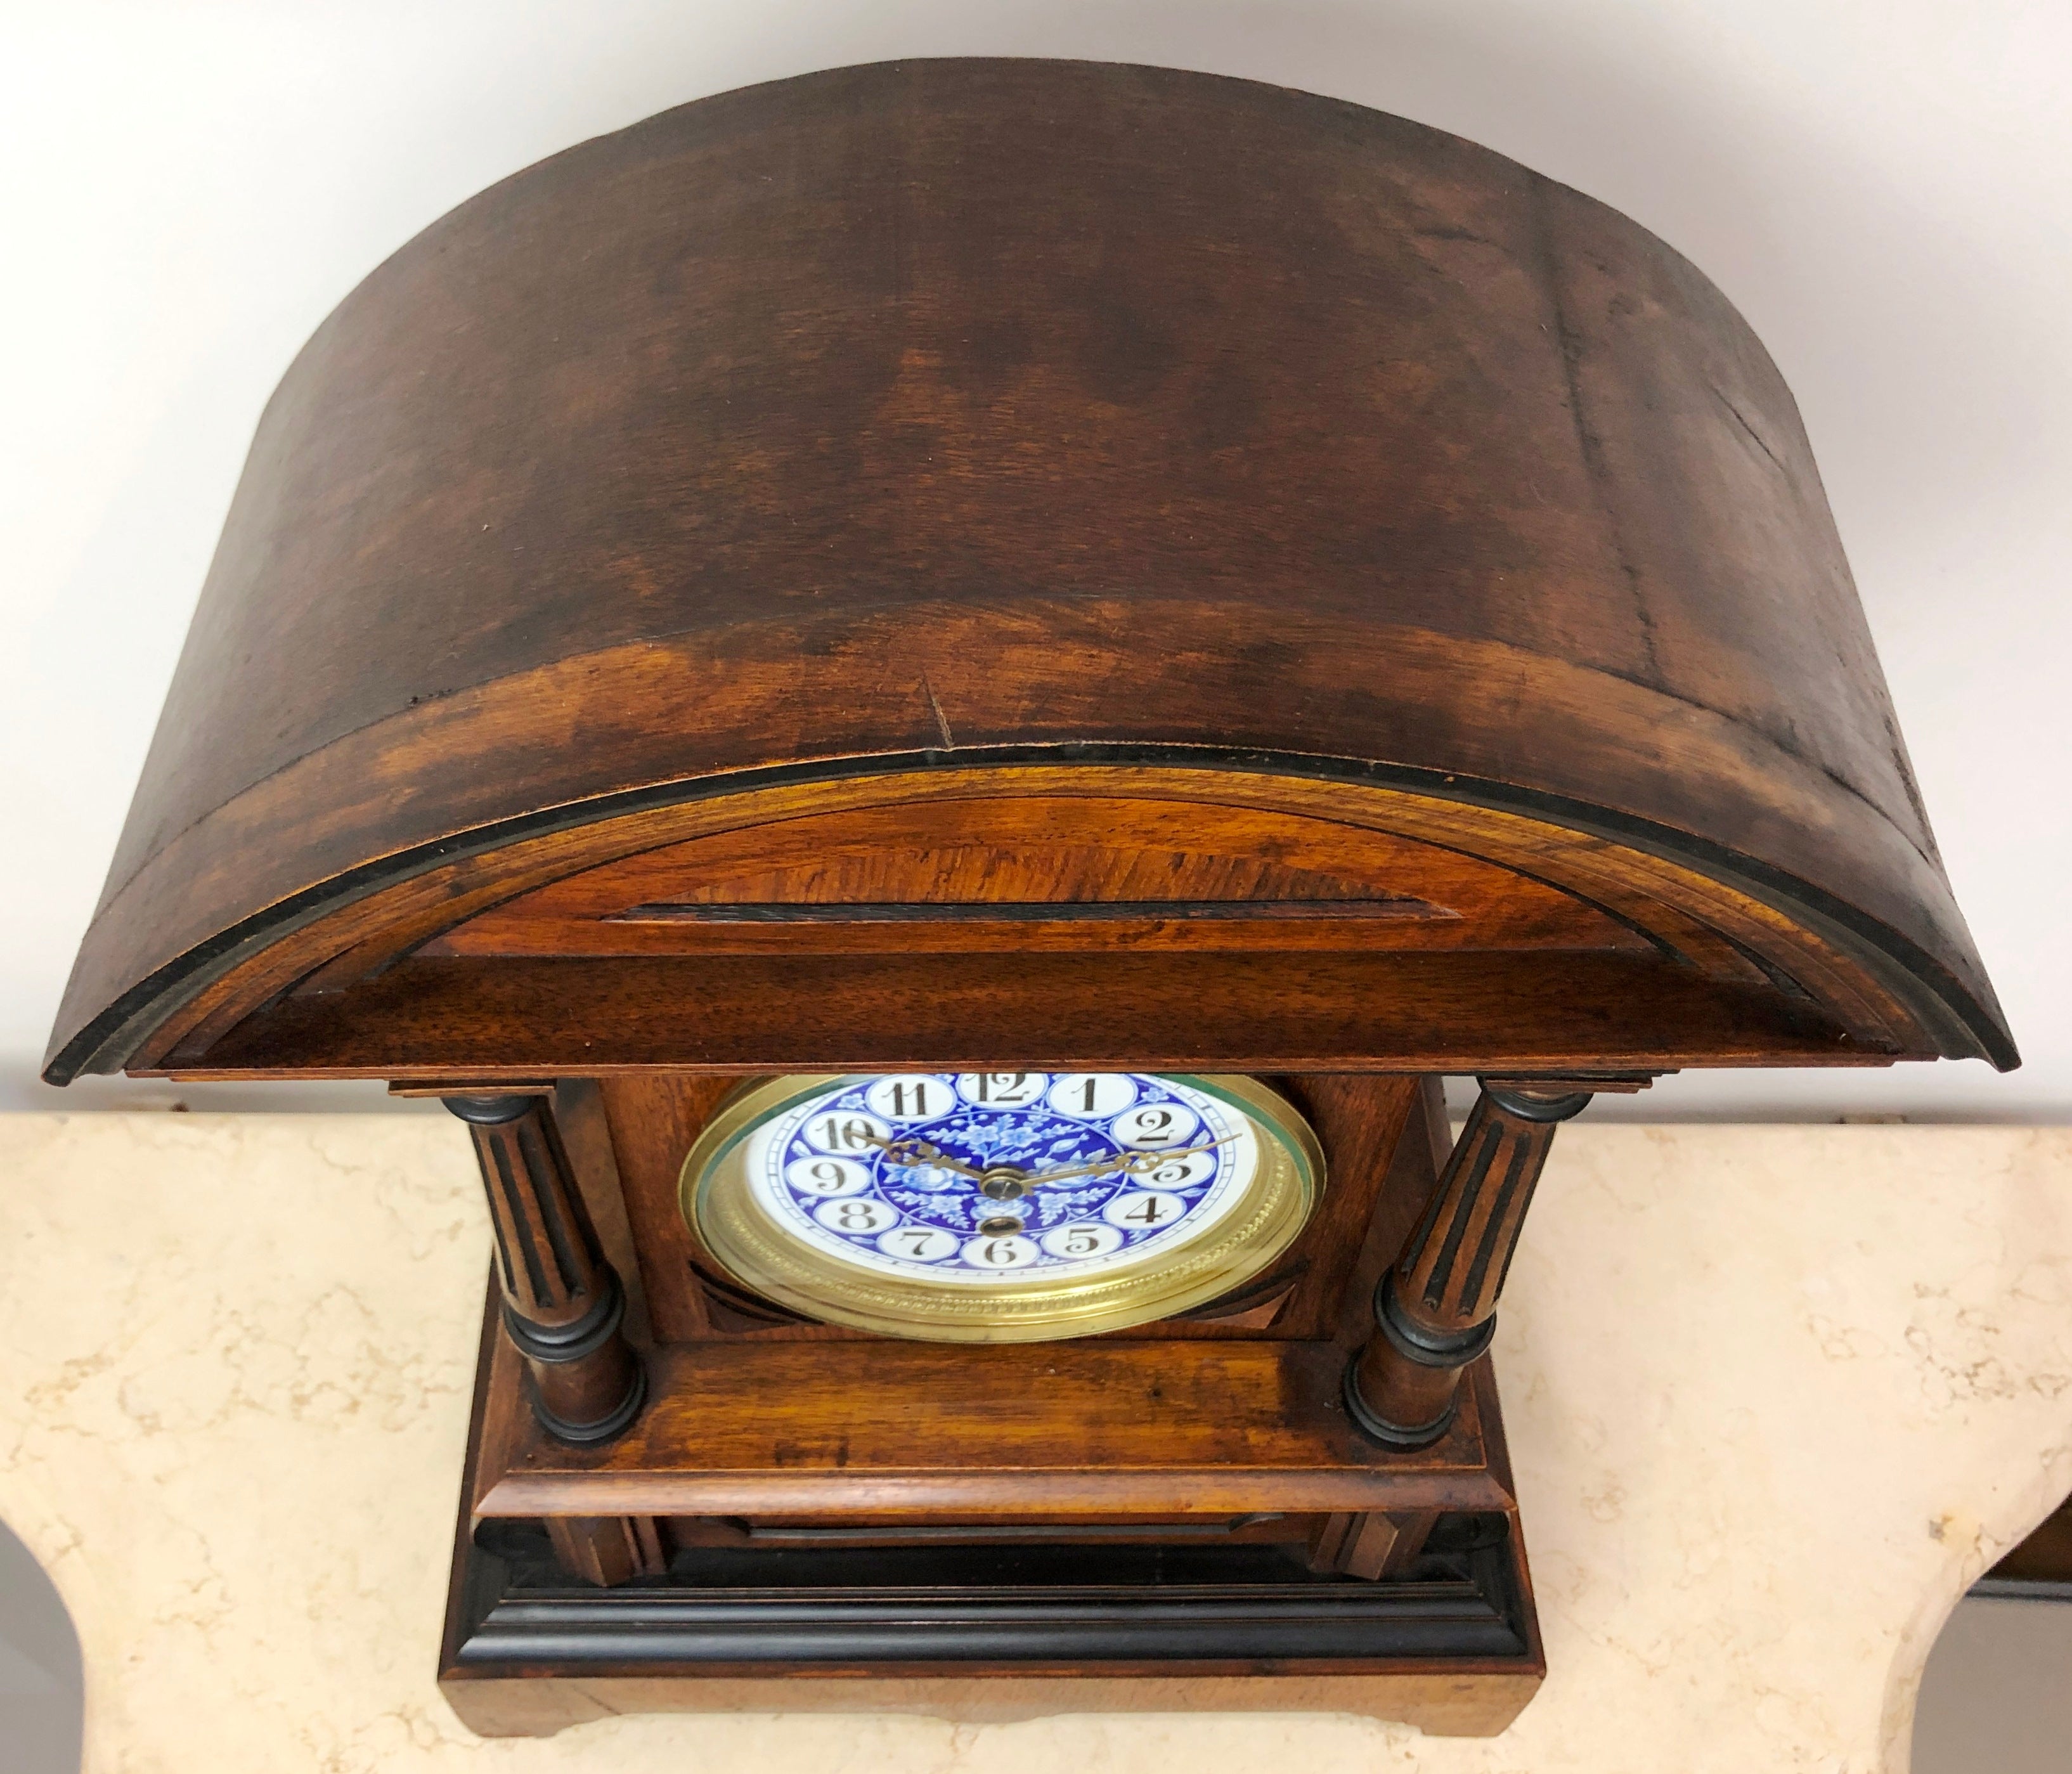 Original Vintage HAC German Mantel Clock | eXibit collection